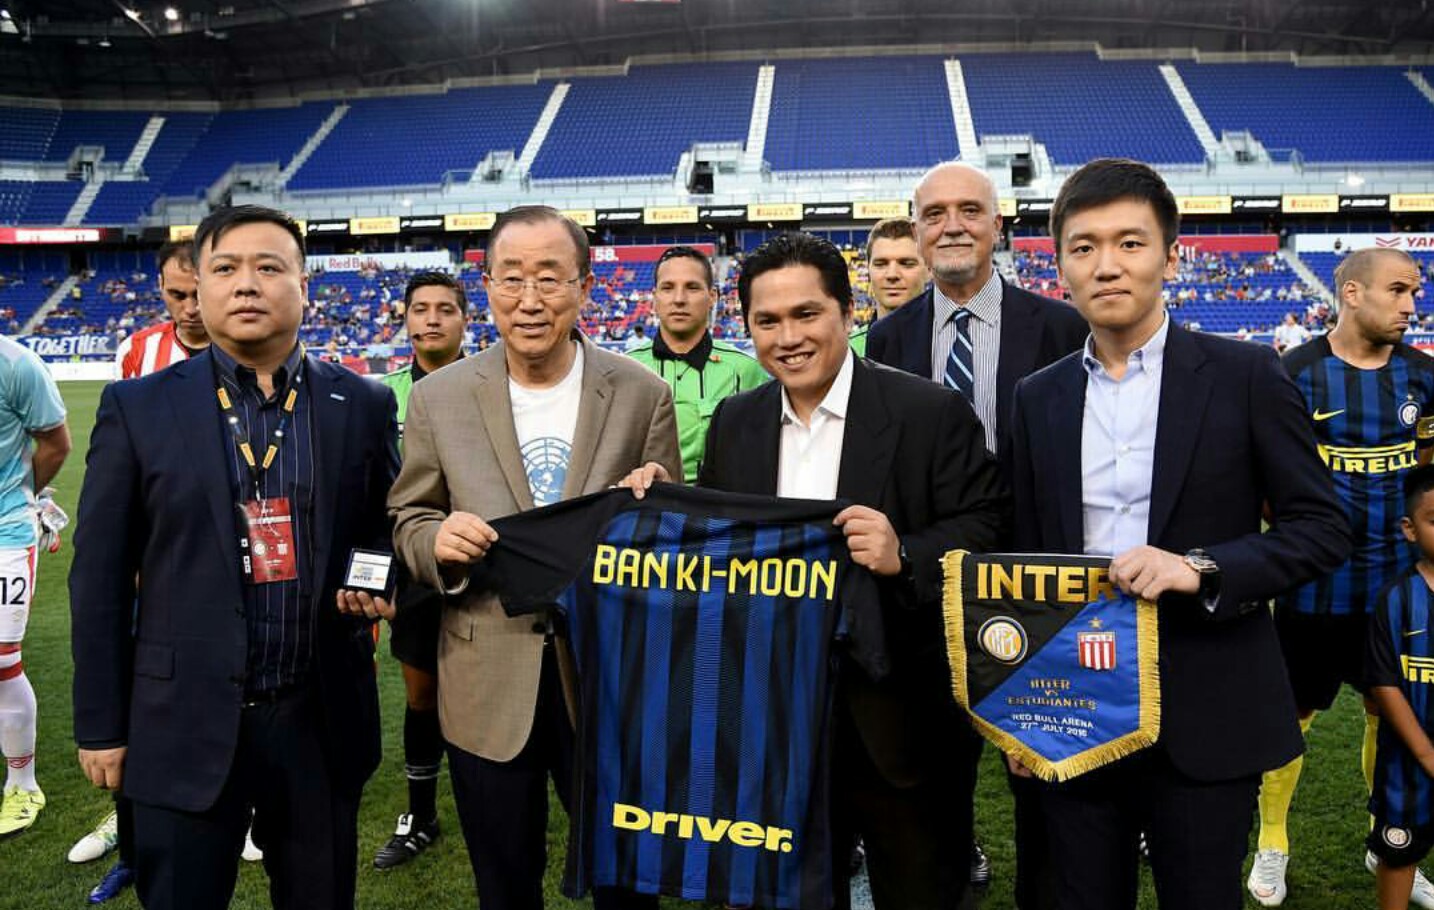 حضور بان کی مون دبیر کل سازمان ملل متحد در بازی دوستانه اینتر (عکس )